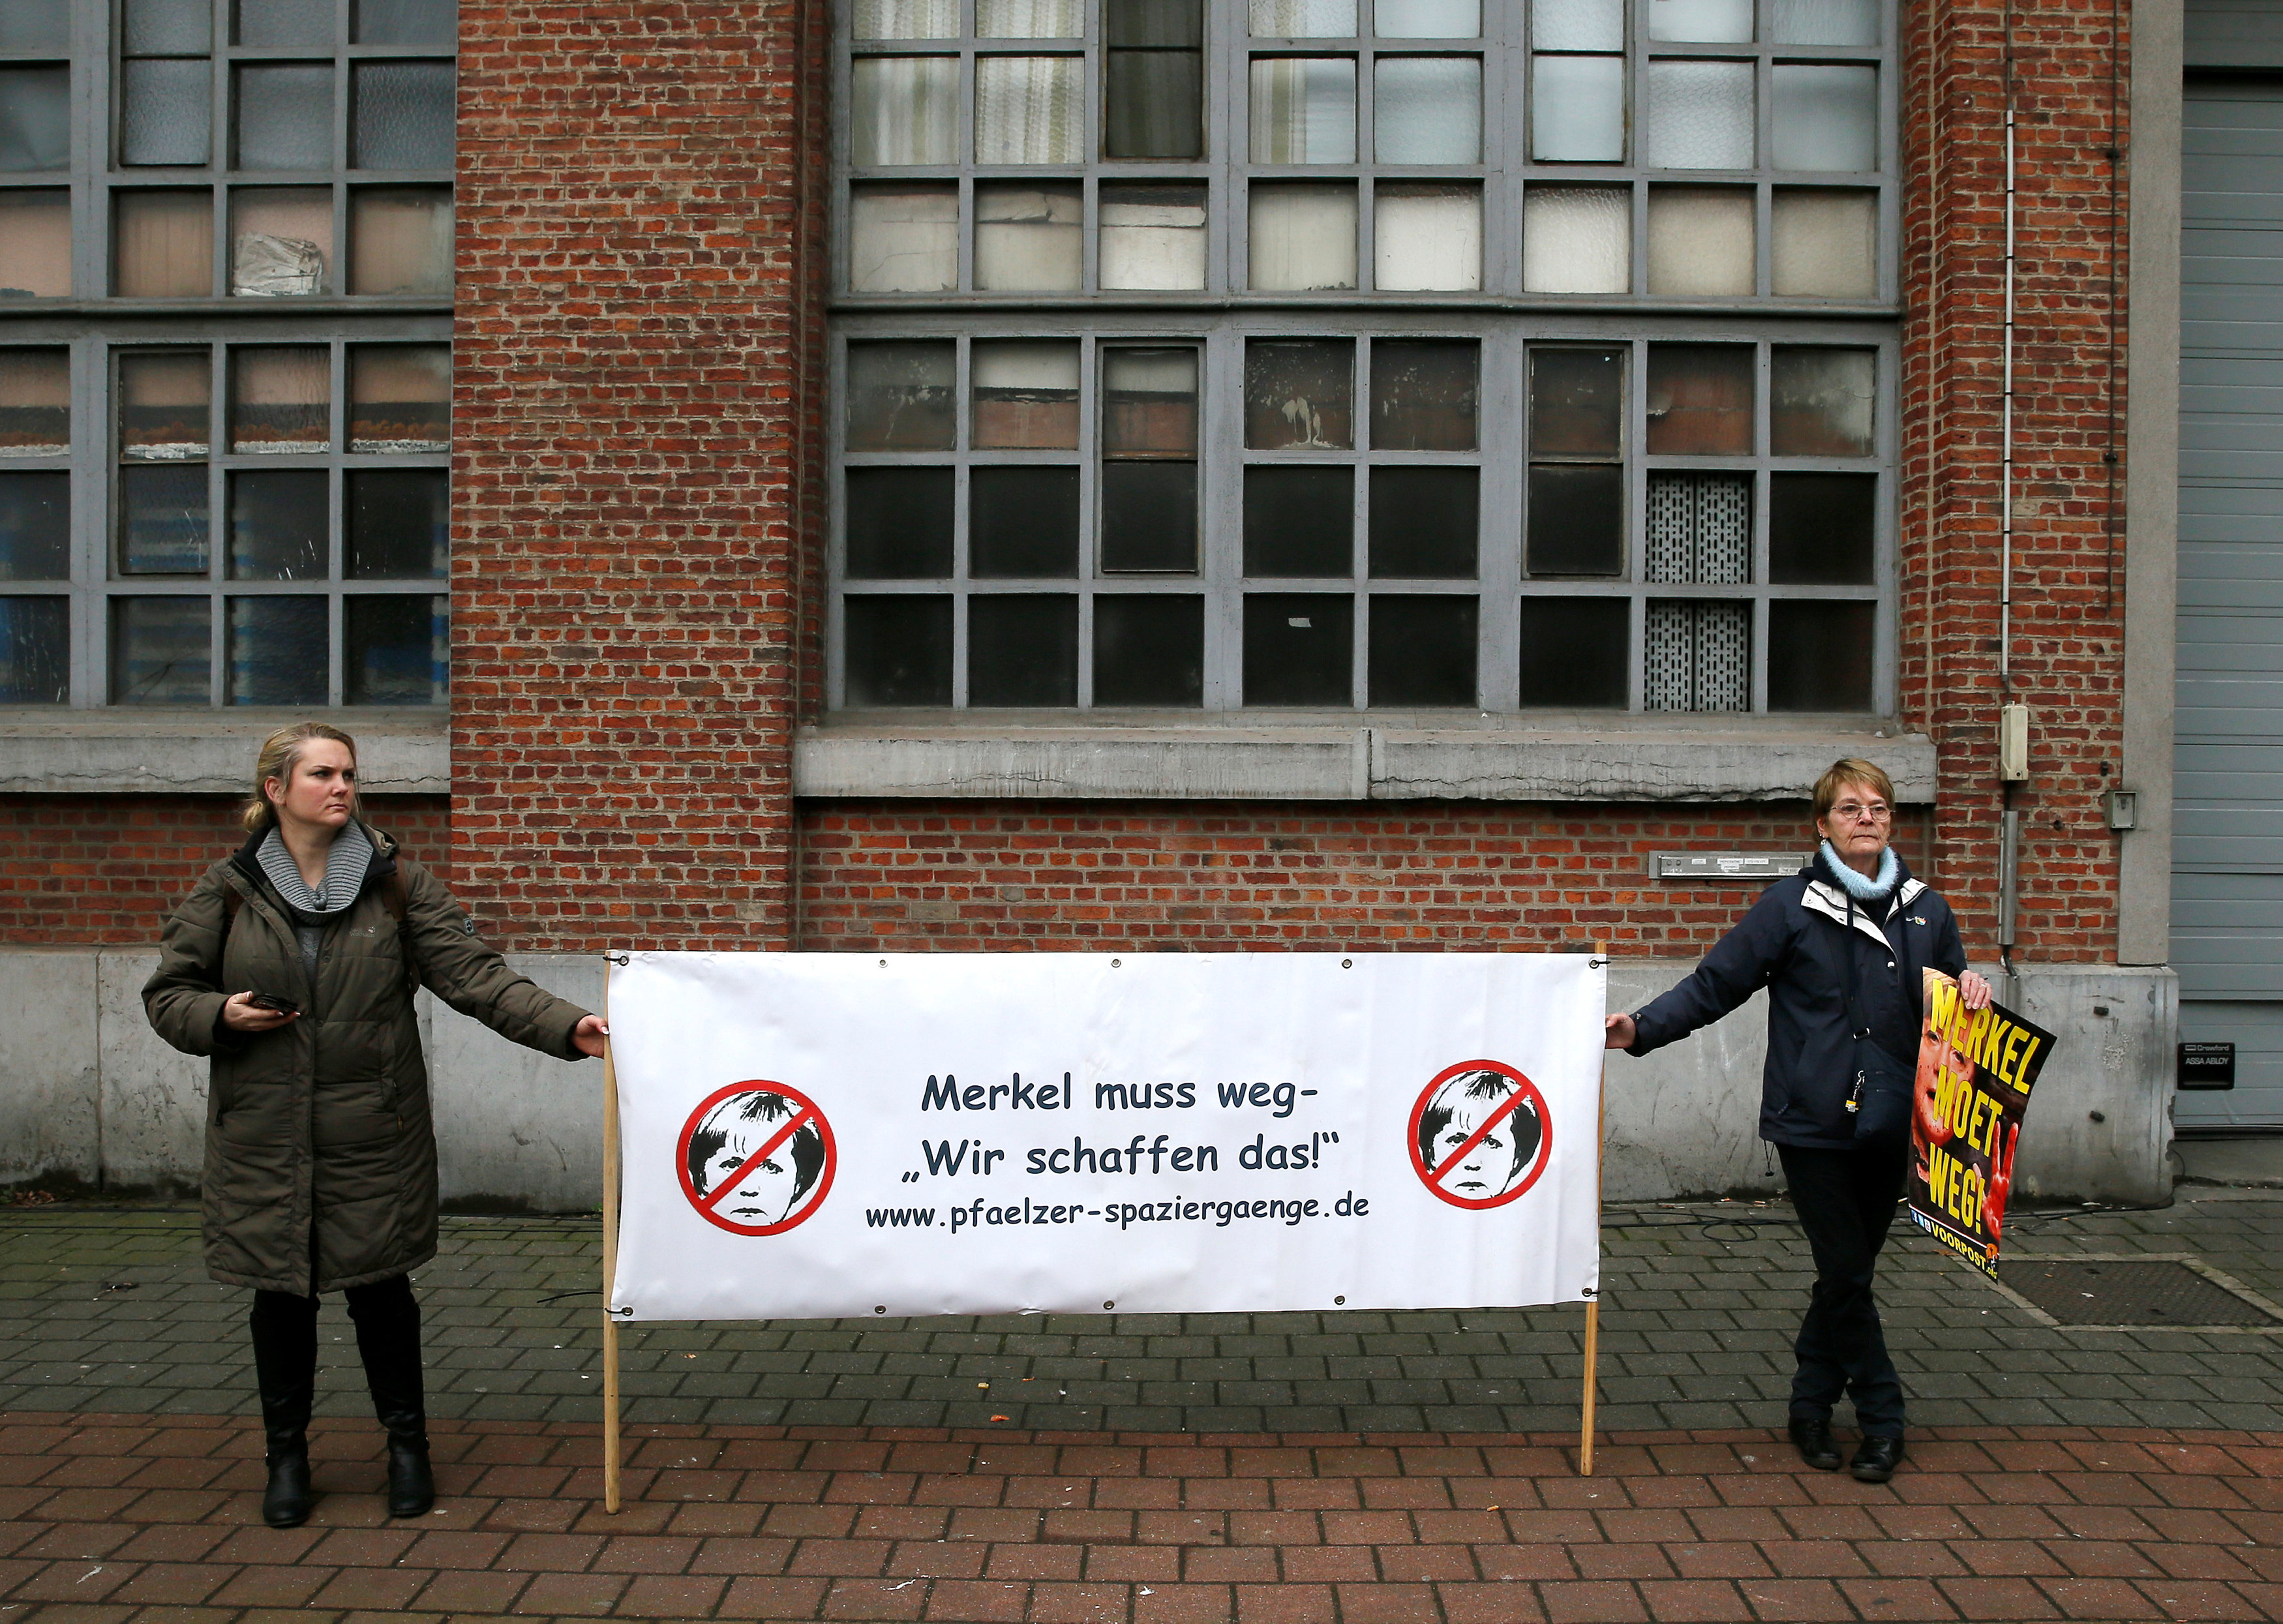 سيدتان تحملان لافتة مناهضة للمستشارة الألمانية انجيلا ميركل